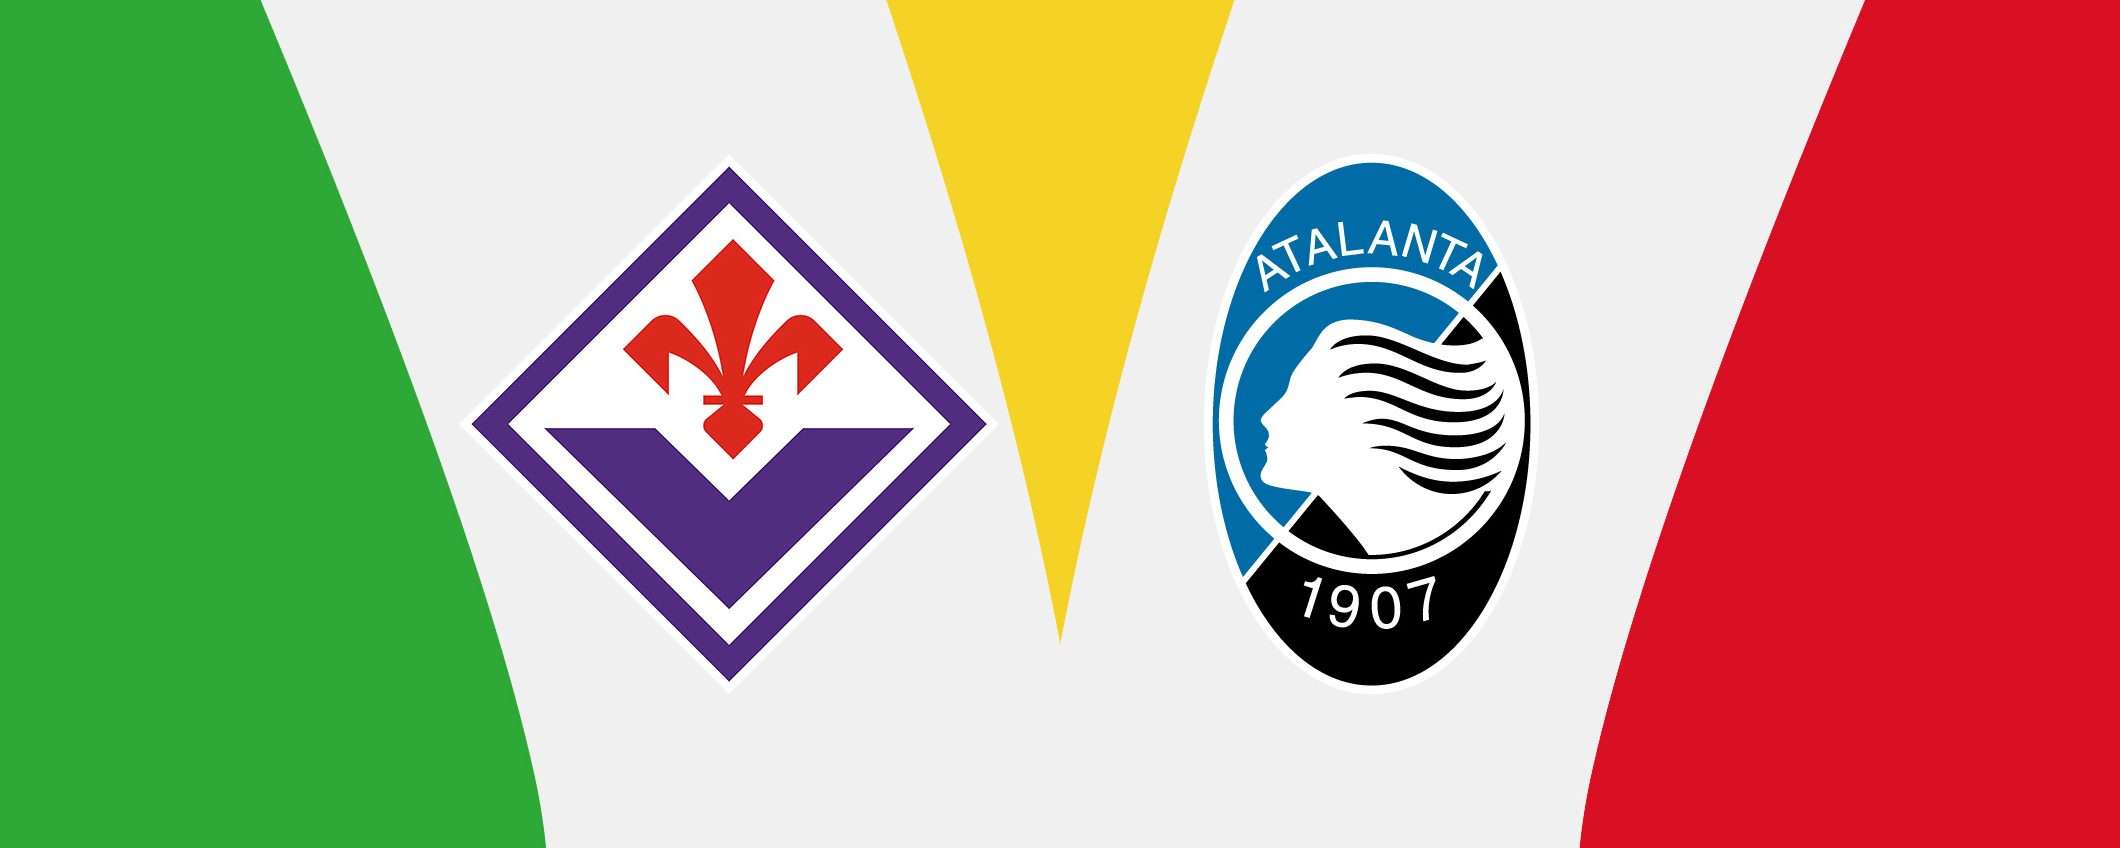 Fiorentina-Atalanta (Coppa Italia): guardala in streaming dall'estero